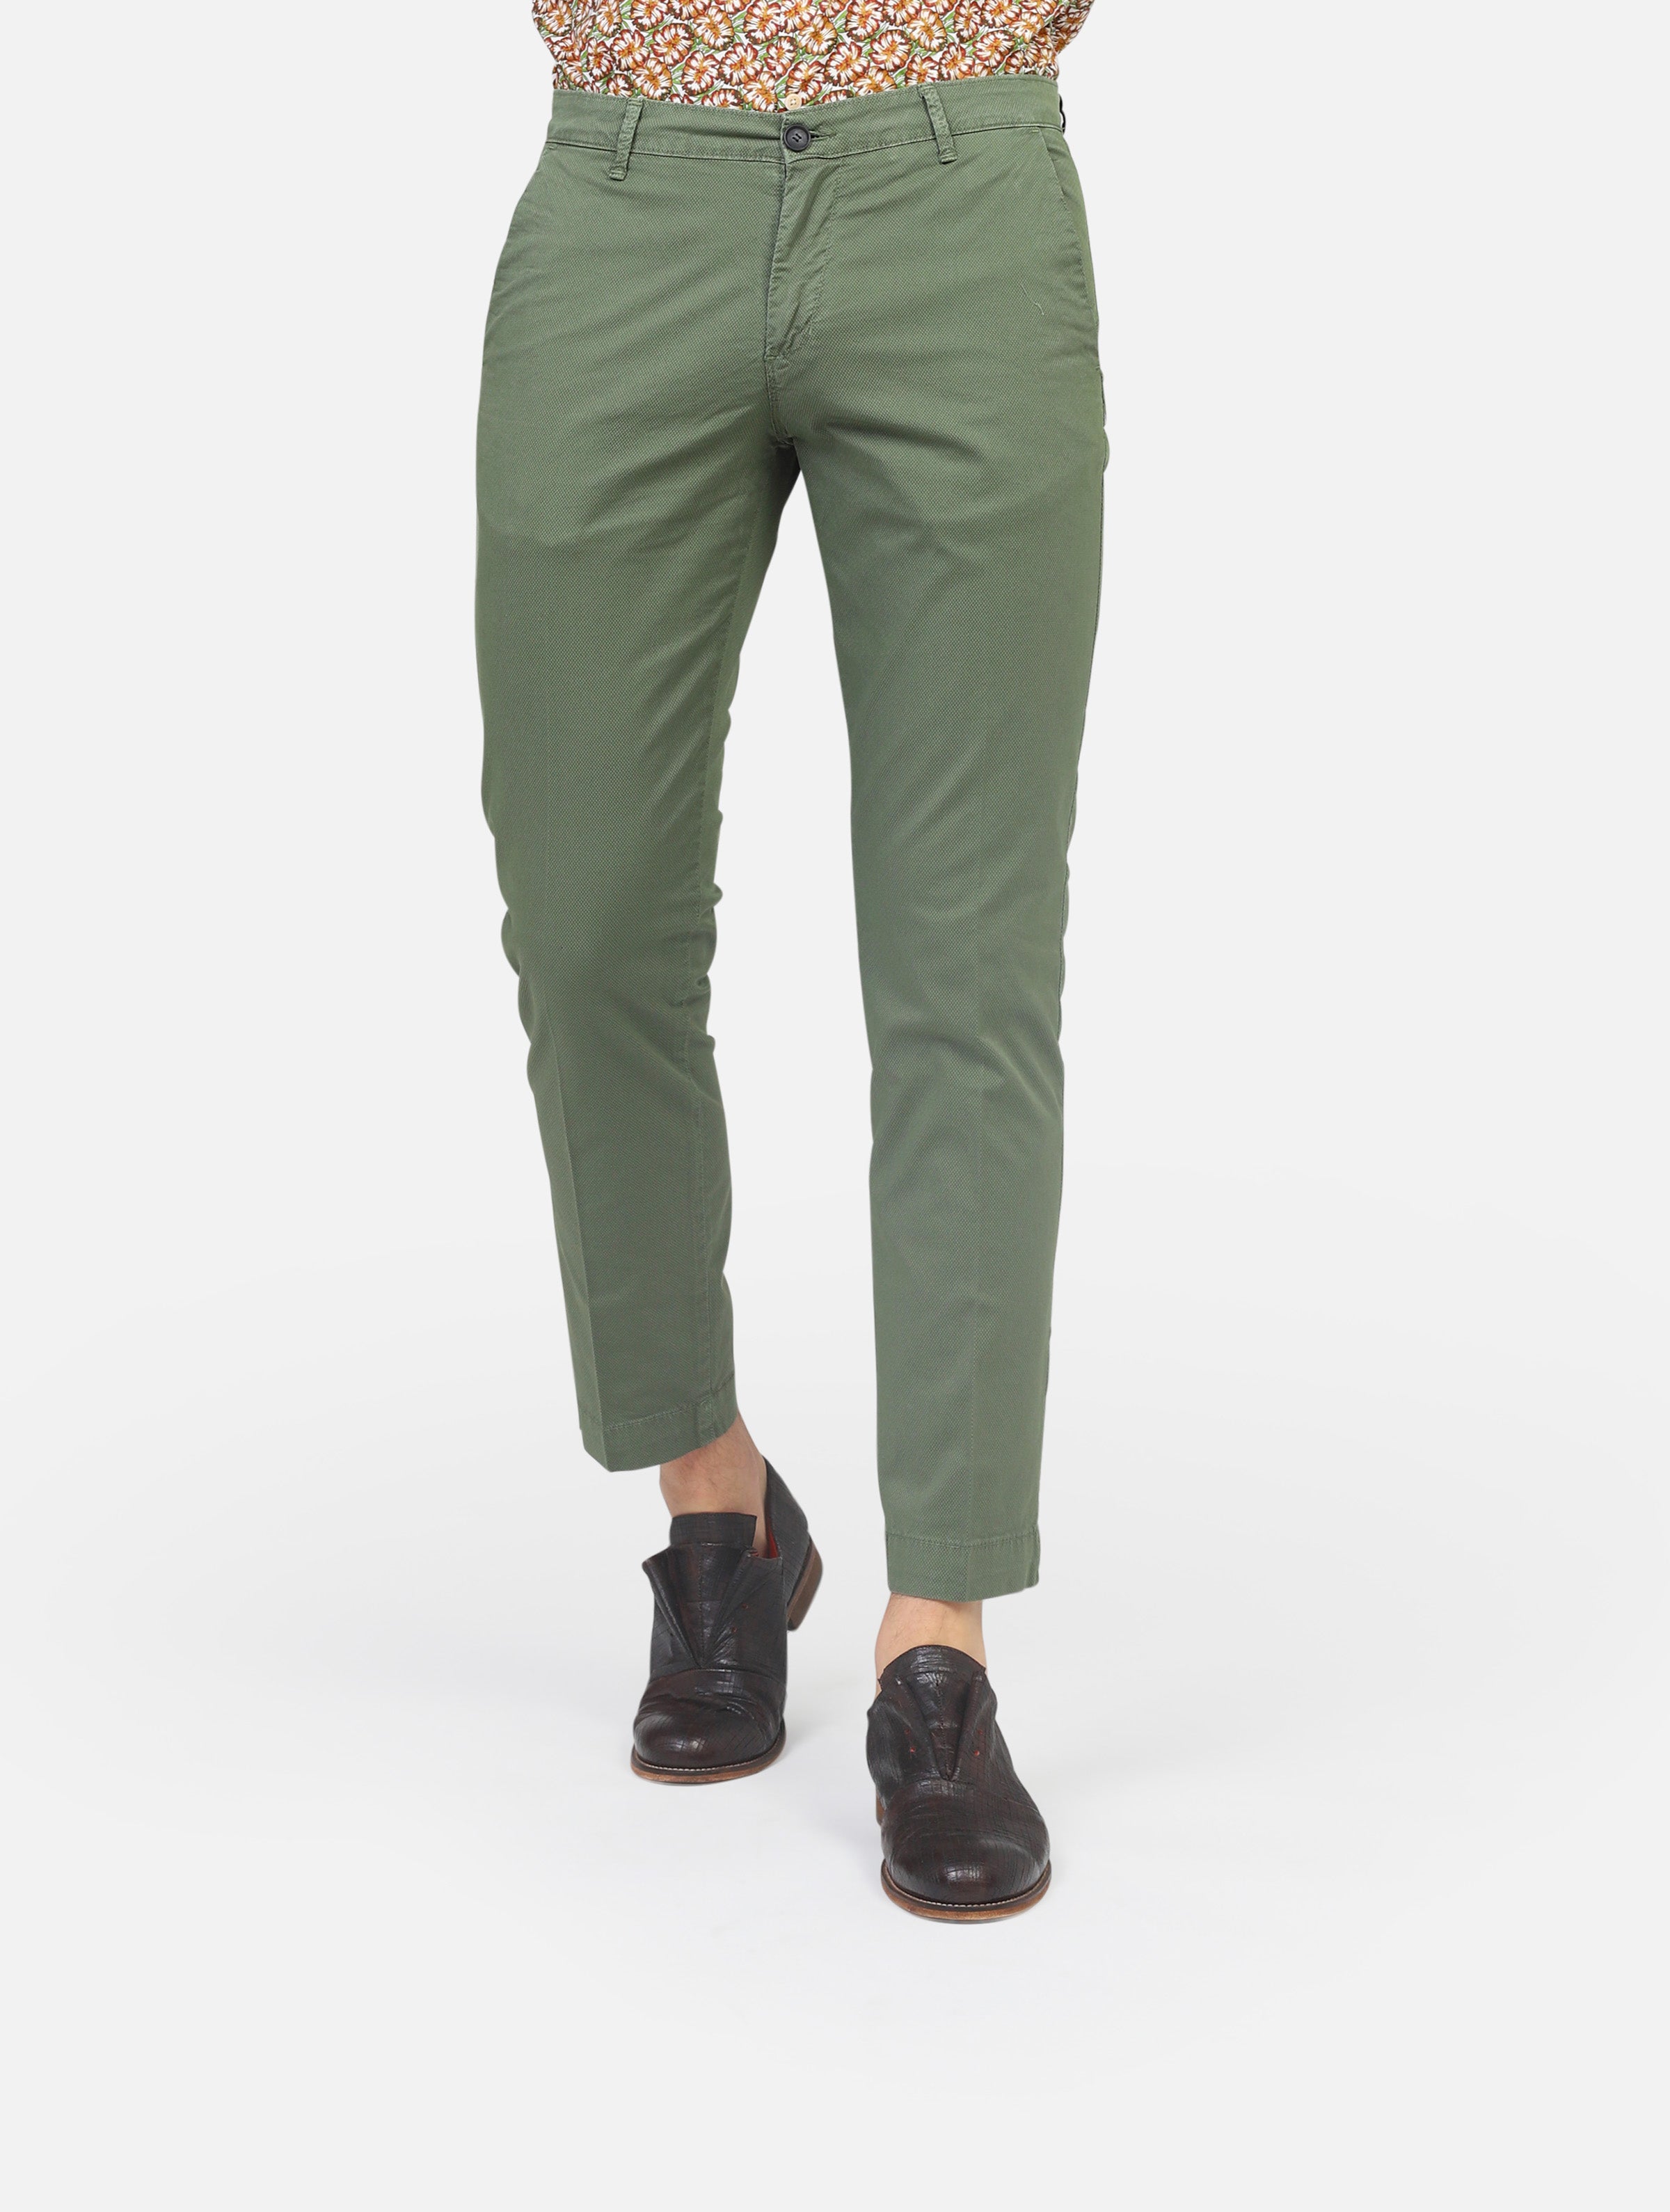 Pantalone moro  verde uomo 